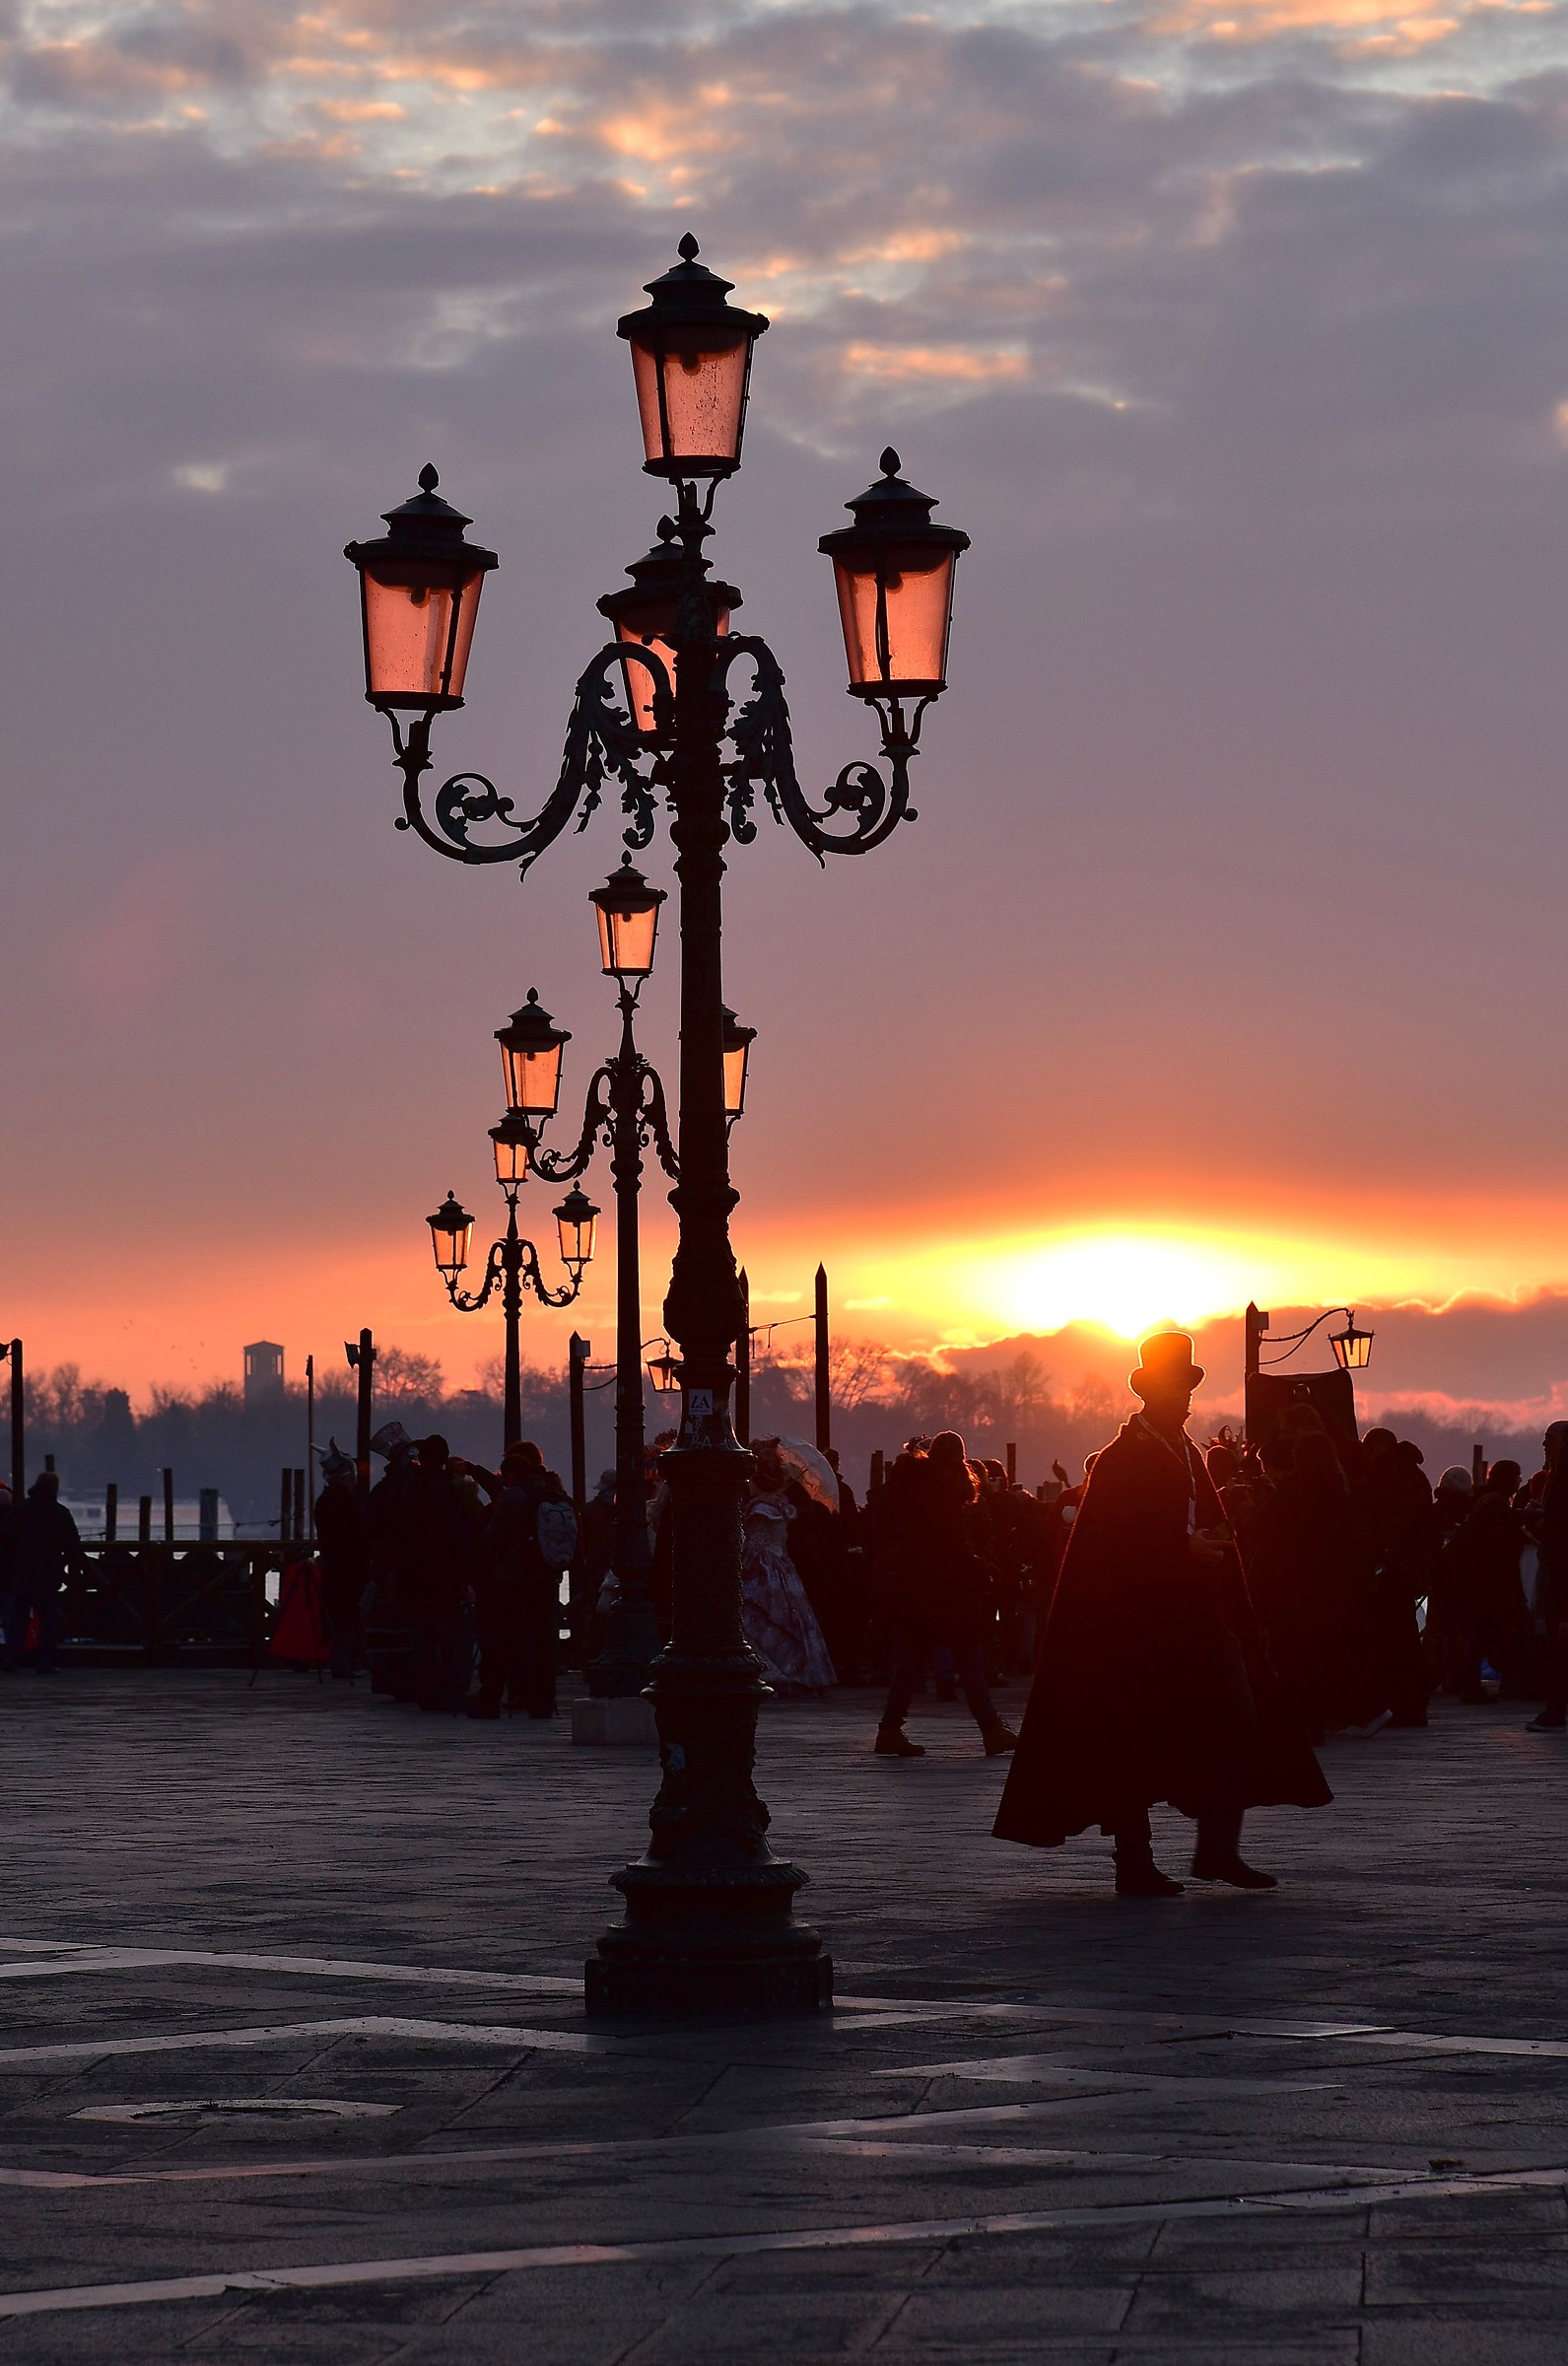 The dawn in Venice....